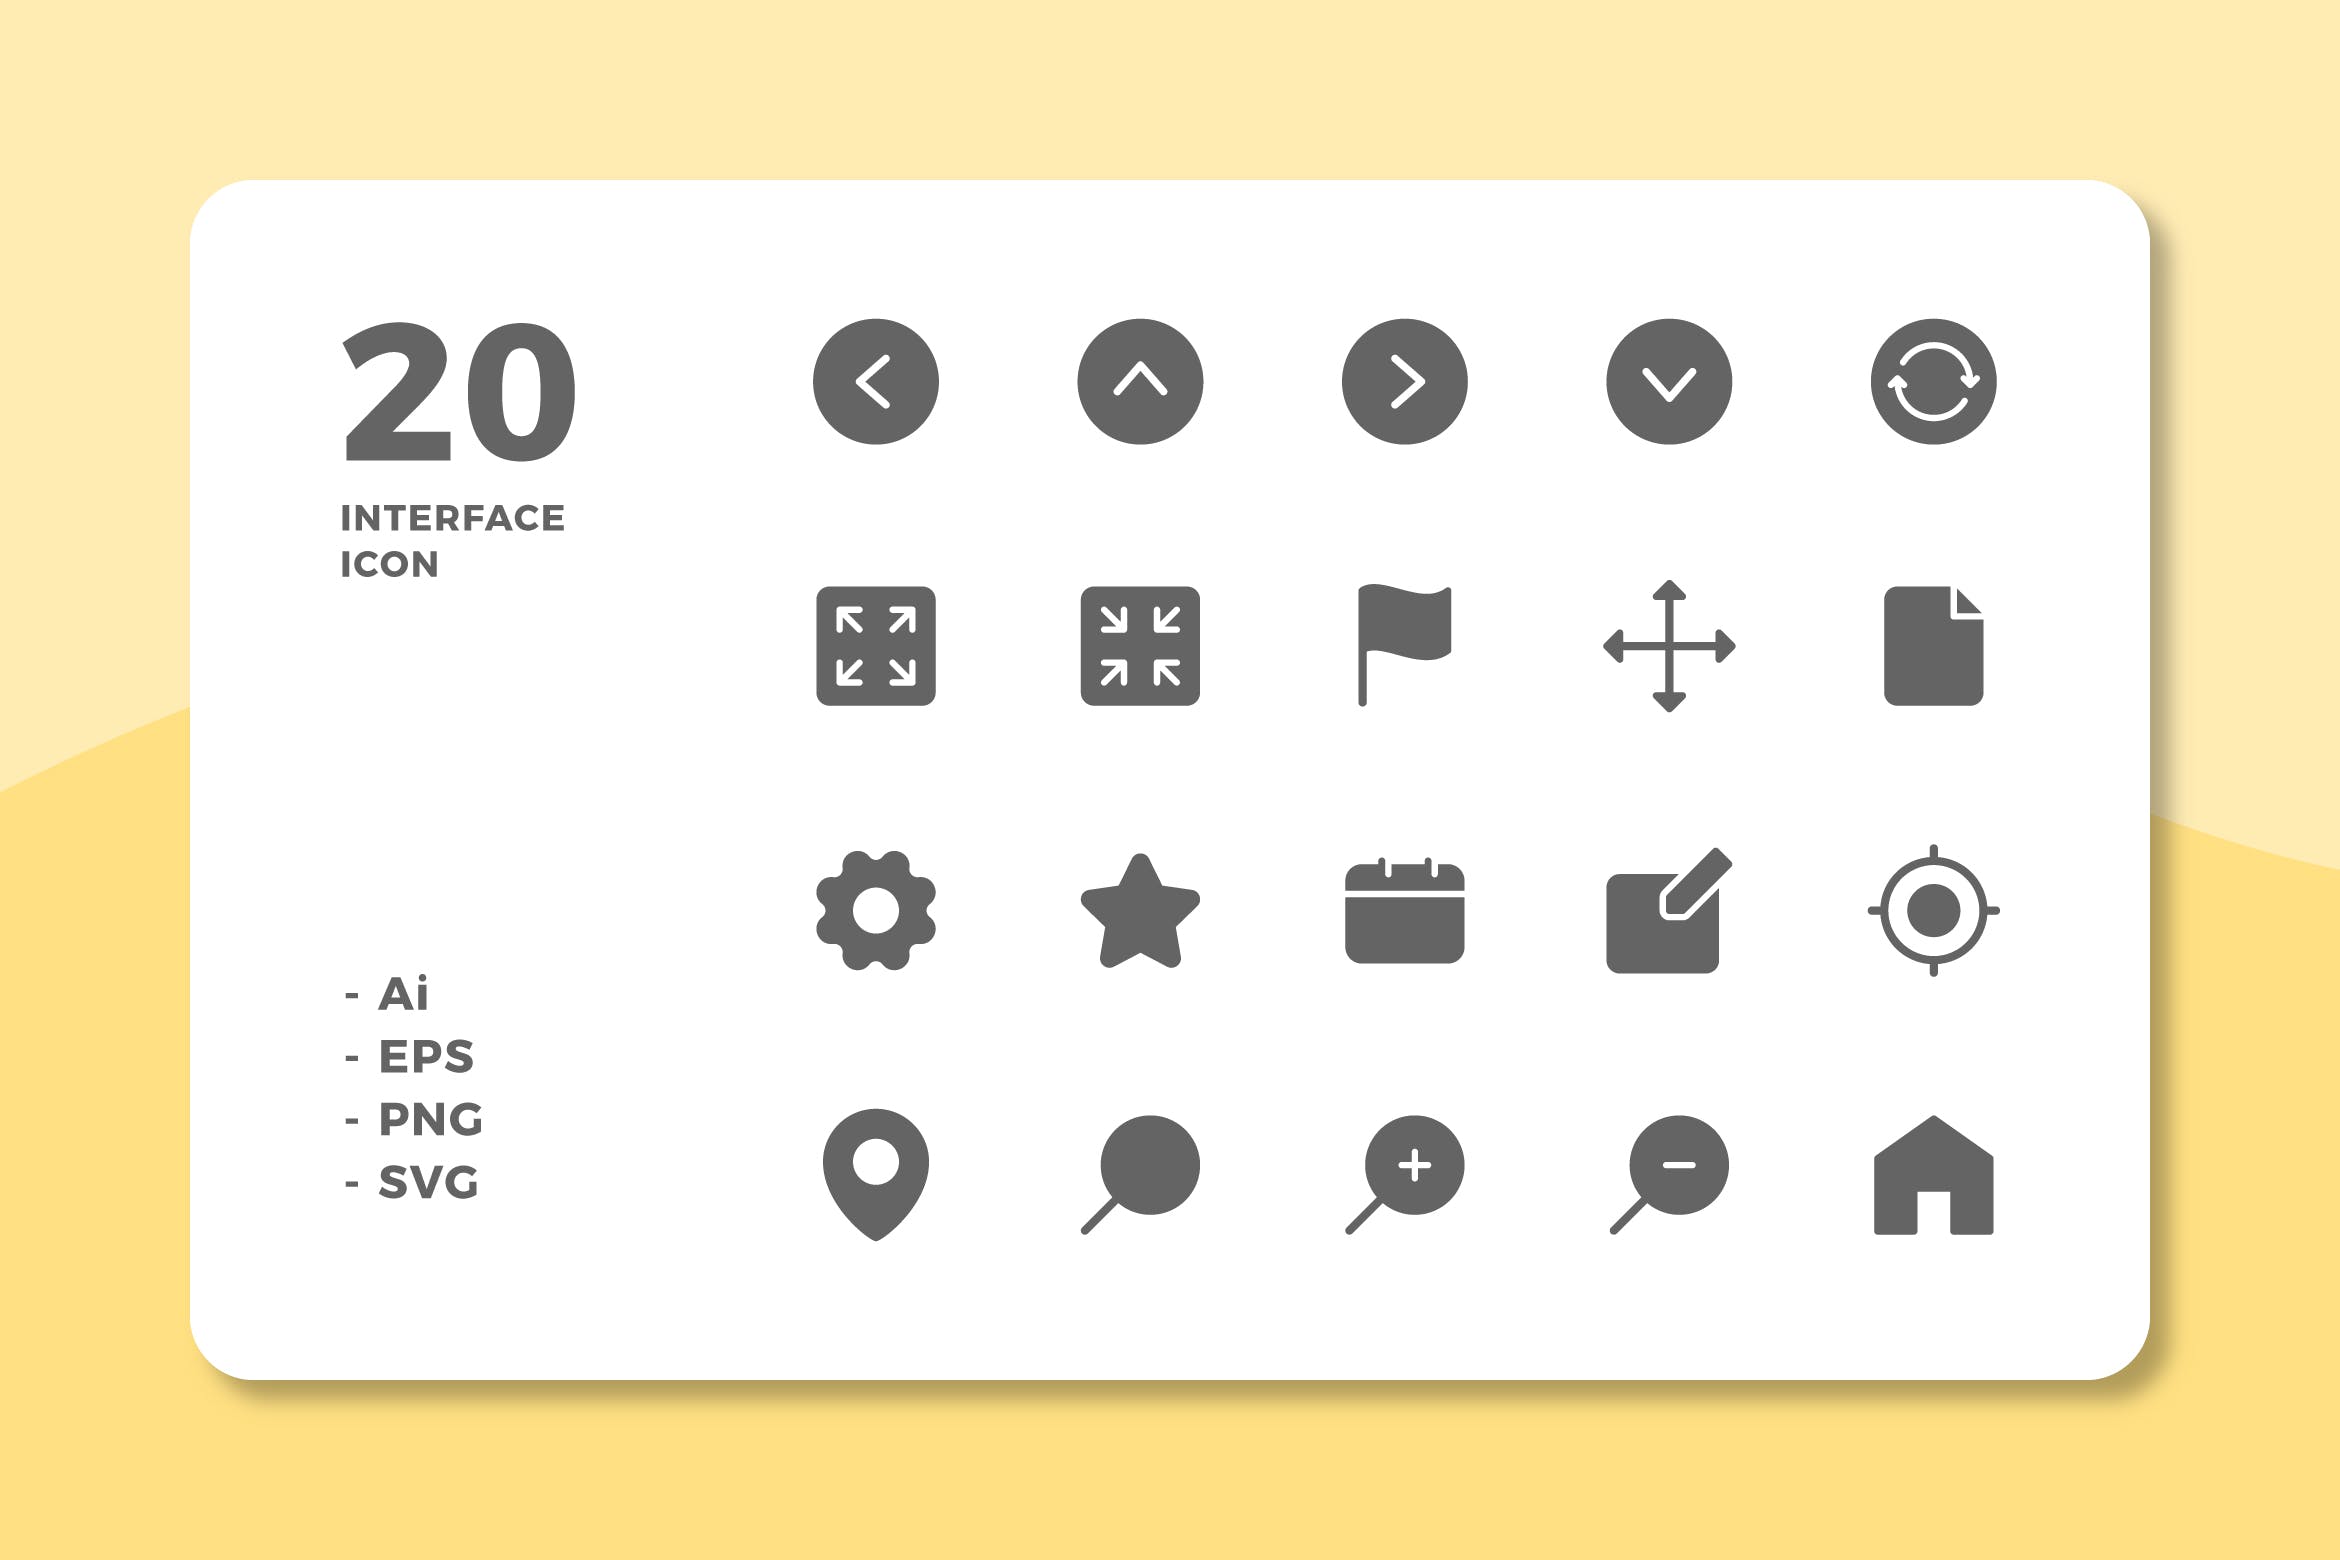 20枚UI界面设计APP操作选项非凡图库精选图标v1 20 Interface Icons Vol.1 (Solid)插图